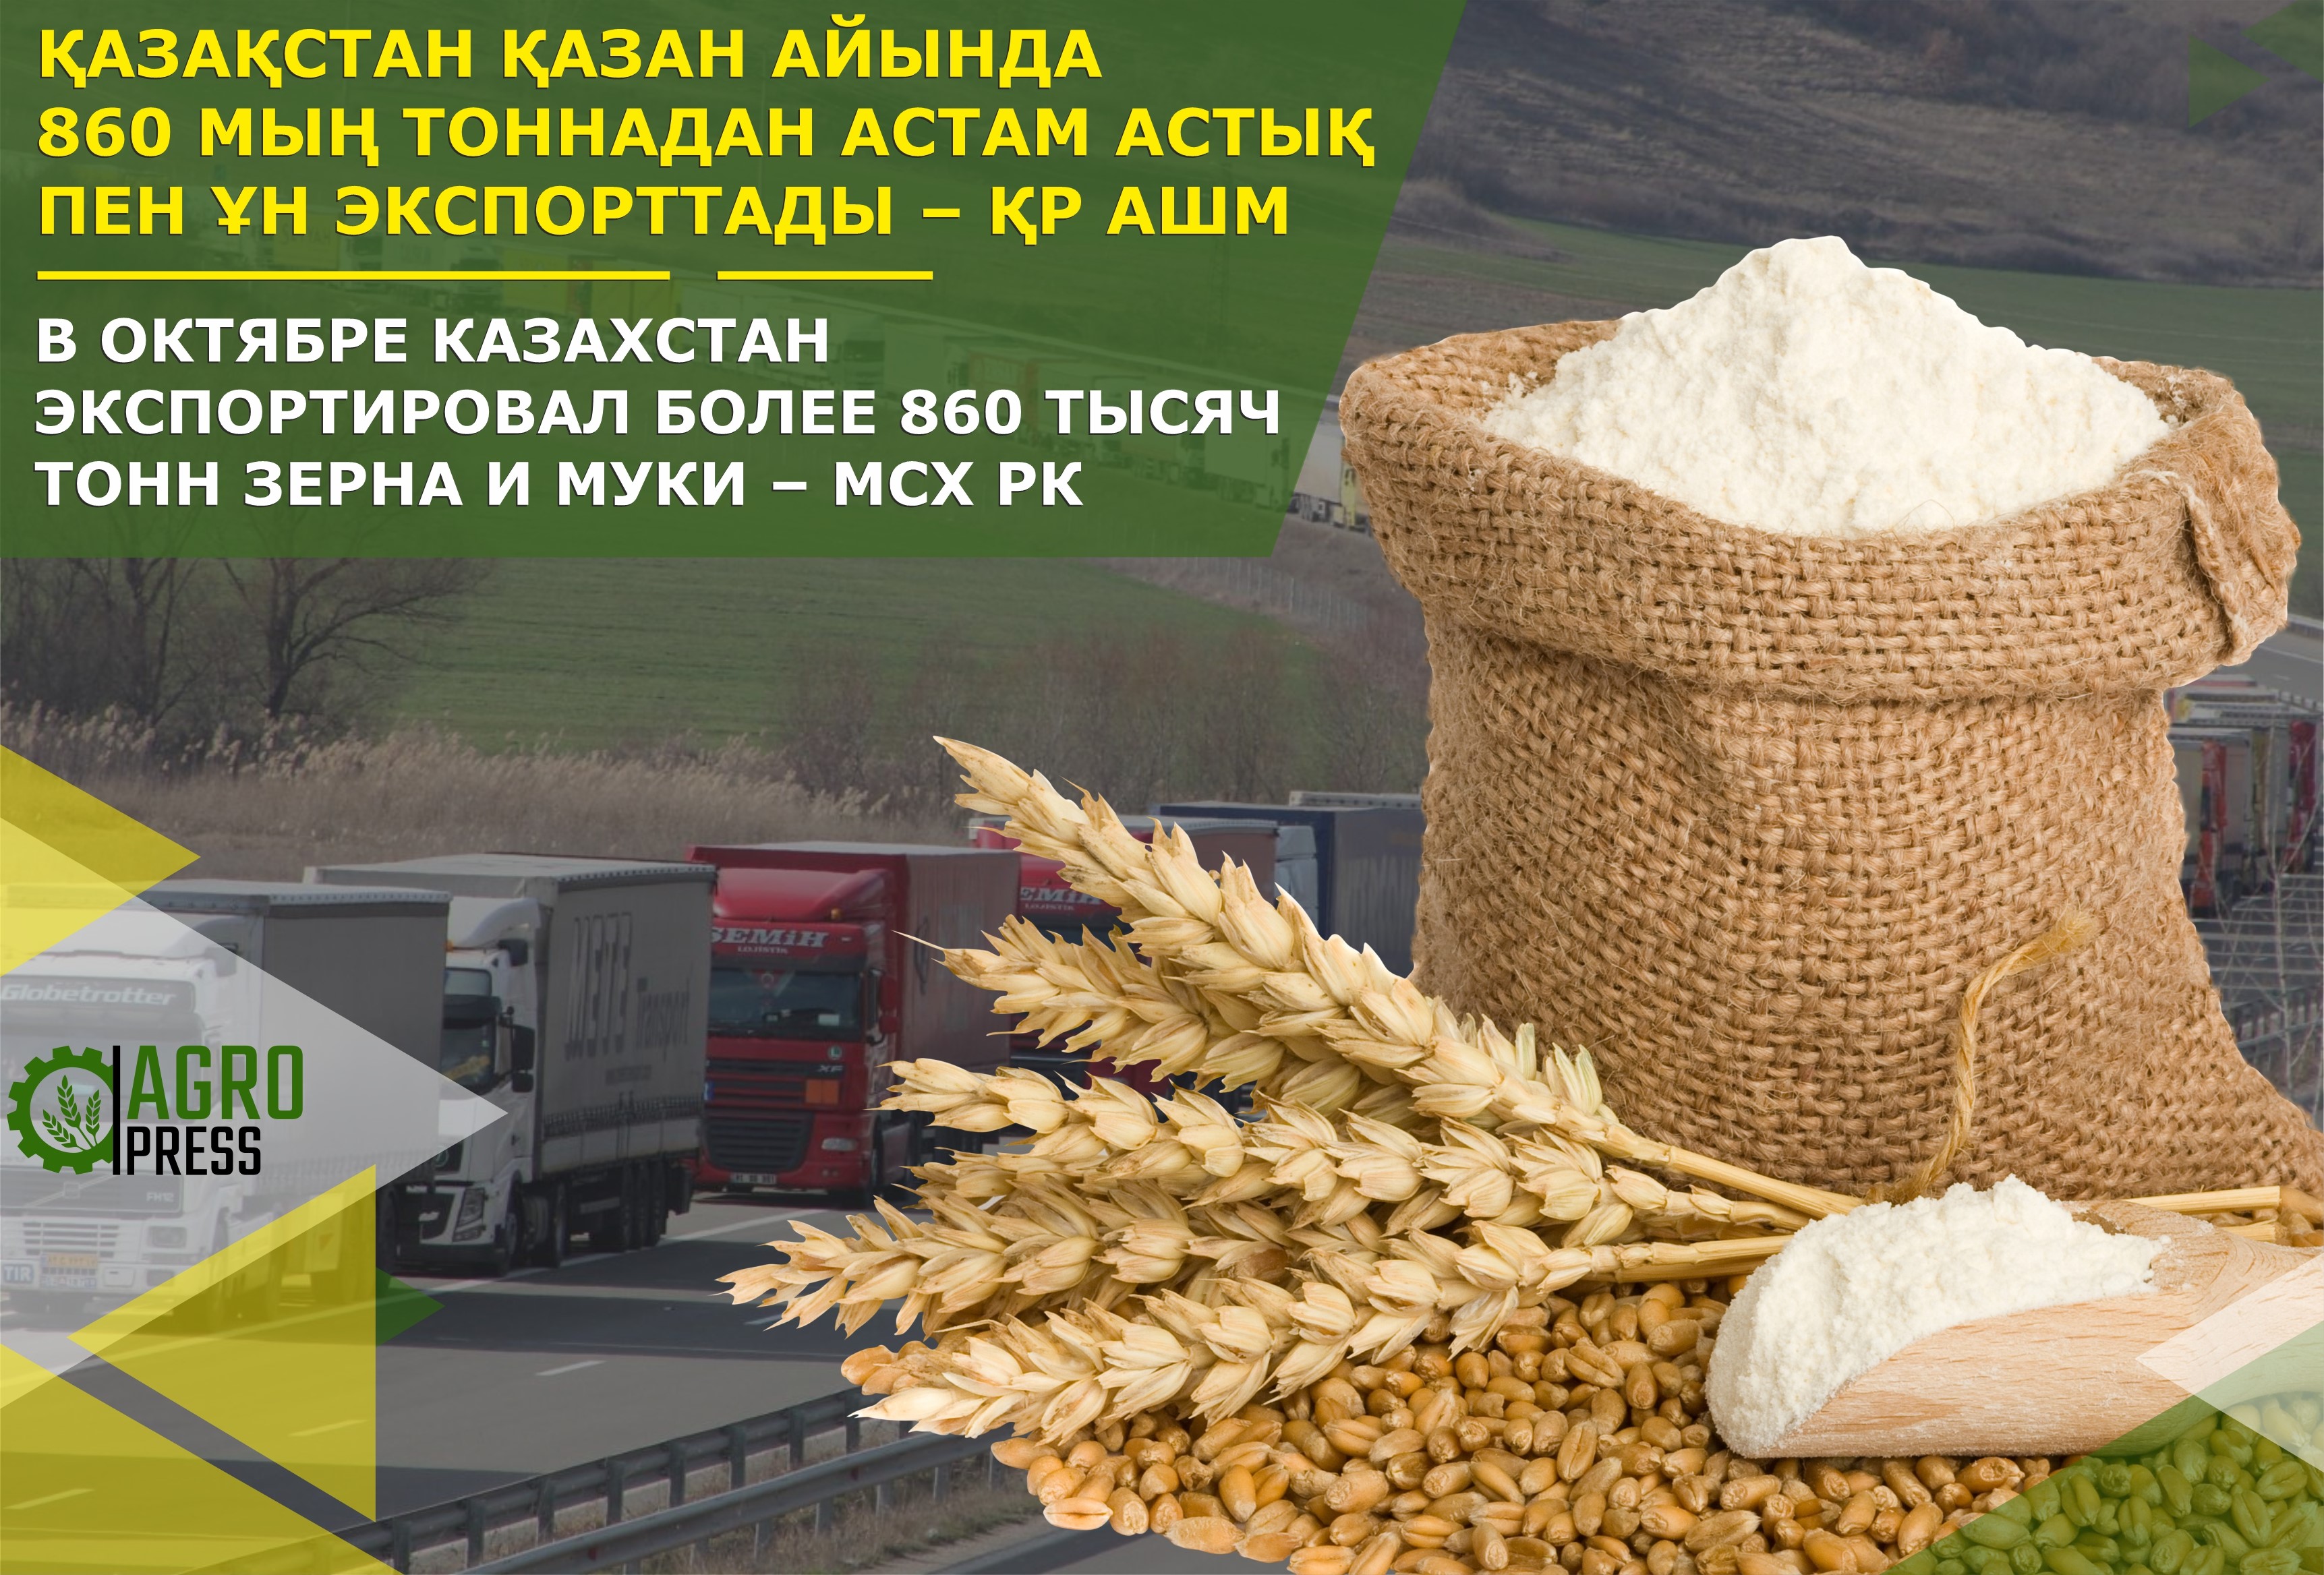 В октябре Казахстан экспортировал более 860 тысяч тонн зерна и муки – МСХ РК